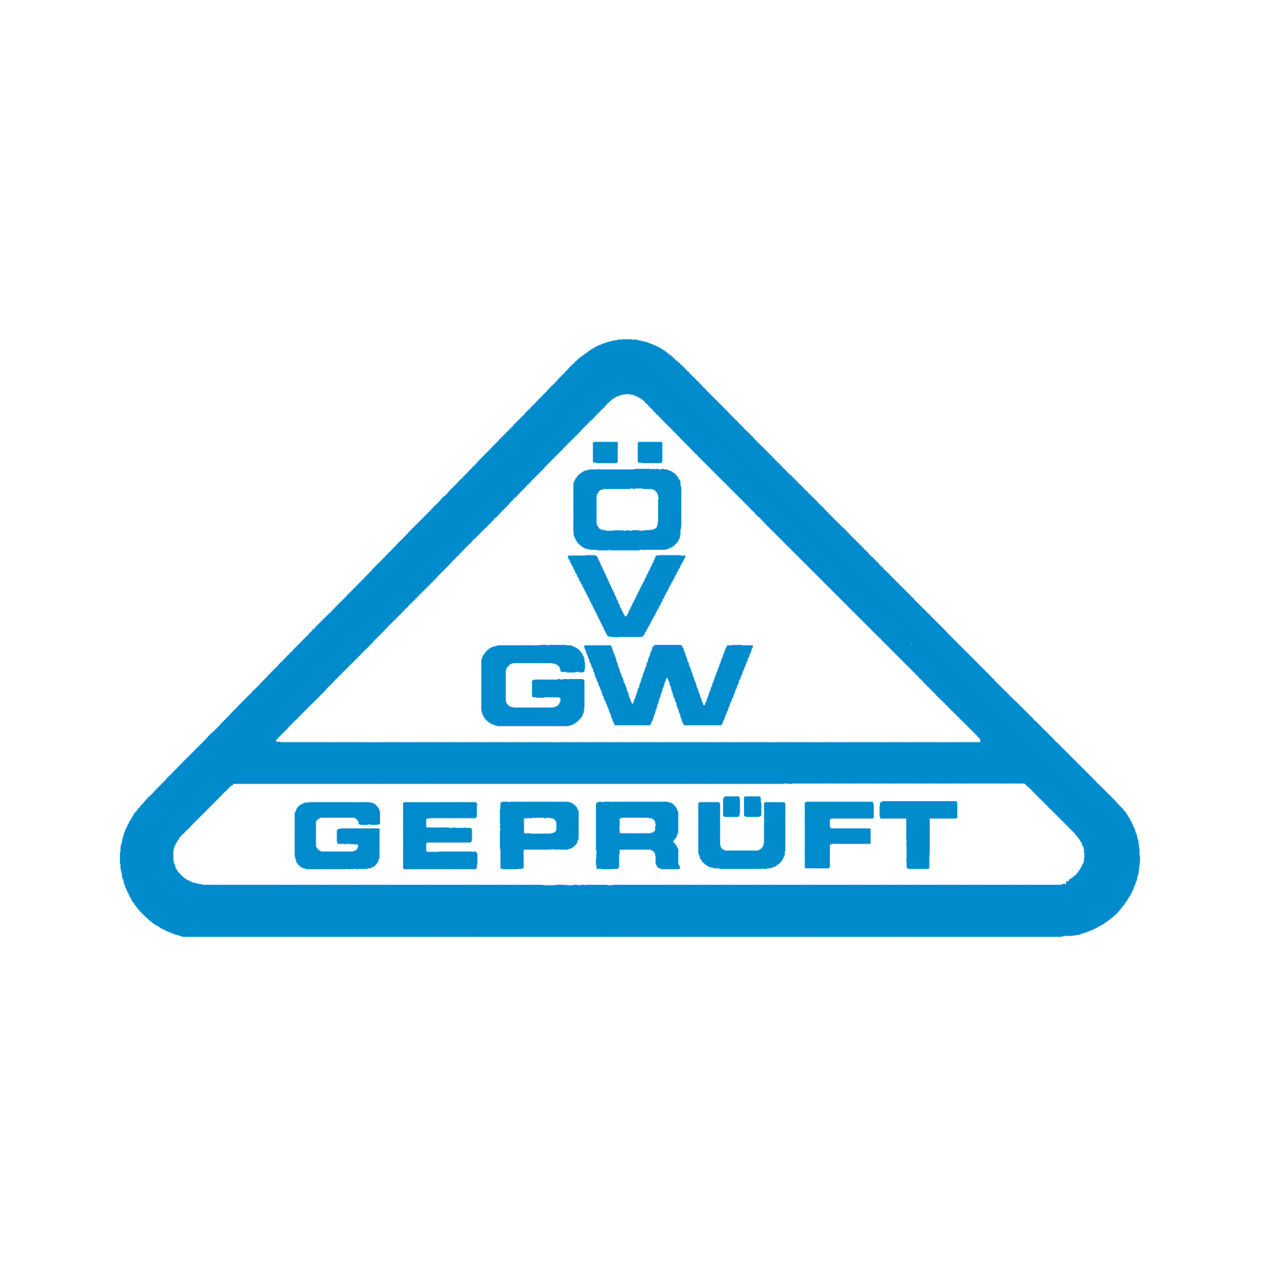 ÖVGW geprüft Logo Zertifikat